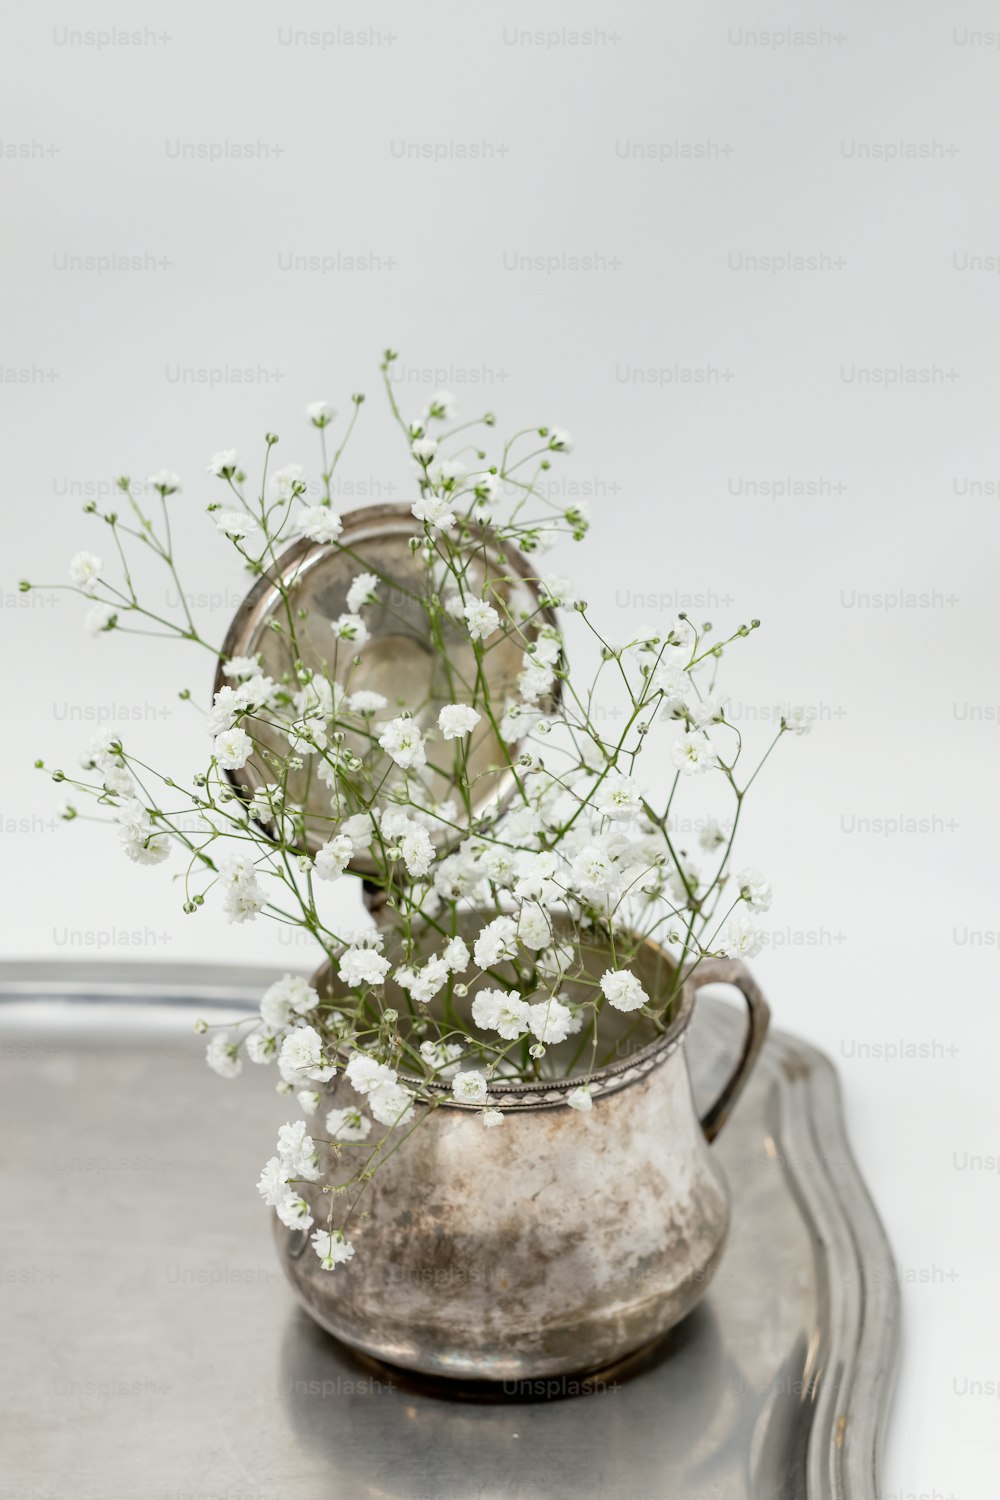 un vase avec des fleurs dedans assis sur un plateau